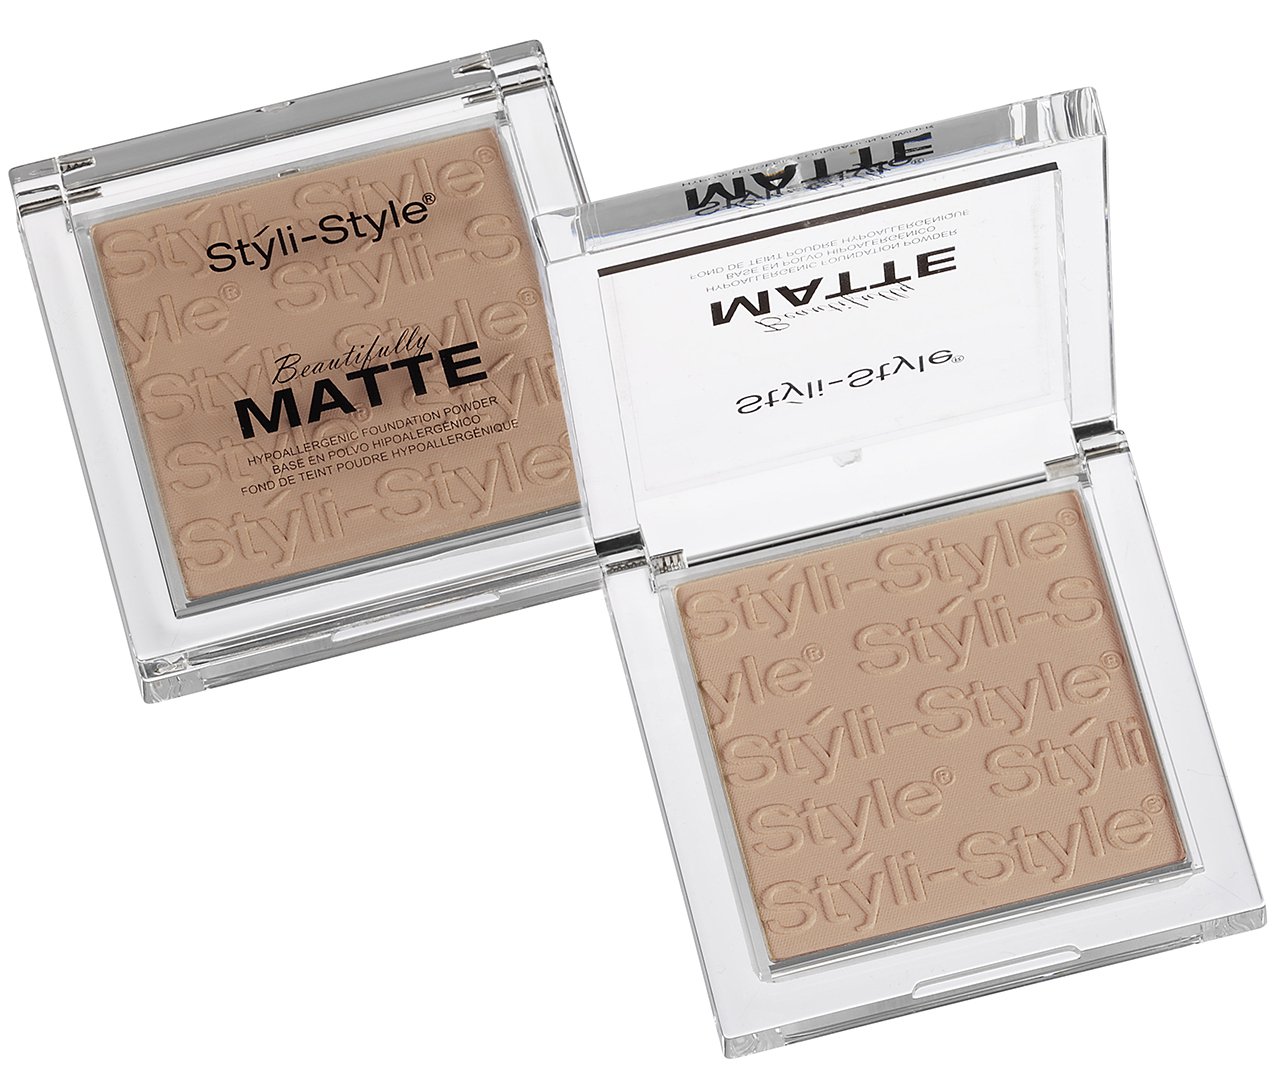 Styli-Style Cosmetics Beautifully Matte - Face Powder - Warm Tan, .32 oz/(9g)